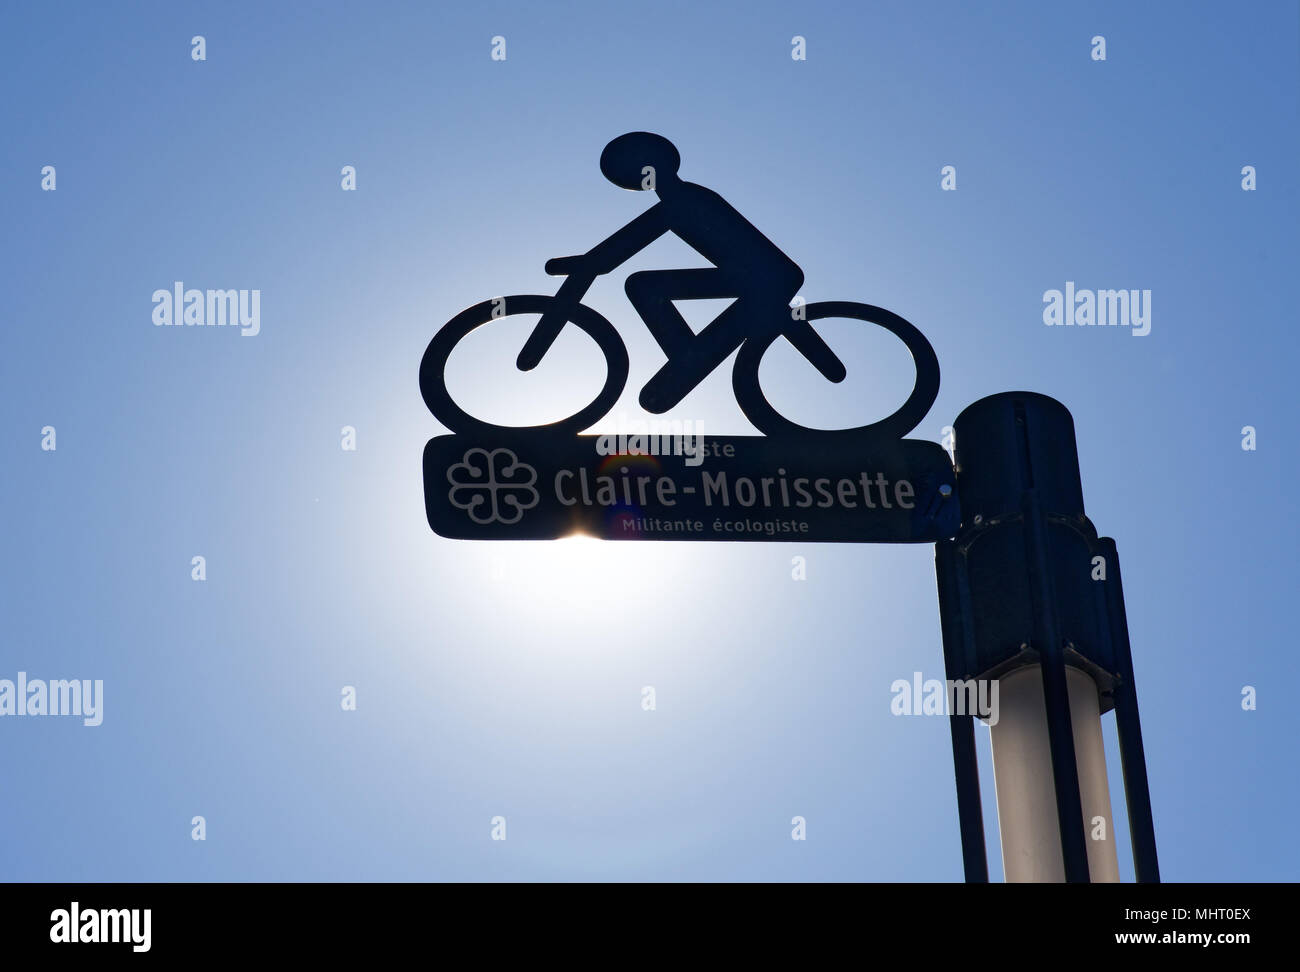 Signe pour les Claire Morissette cycle path sur Maisonneuve street dans le centre-ville de Montréal, Québec, Canada Banque D'Images